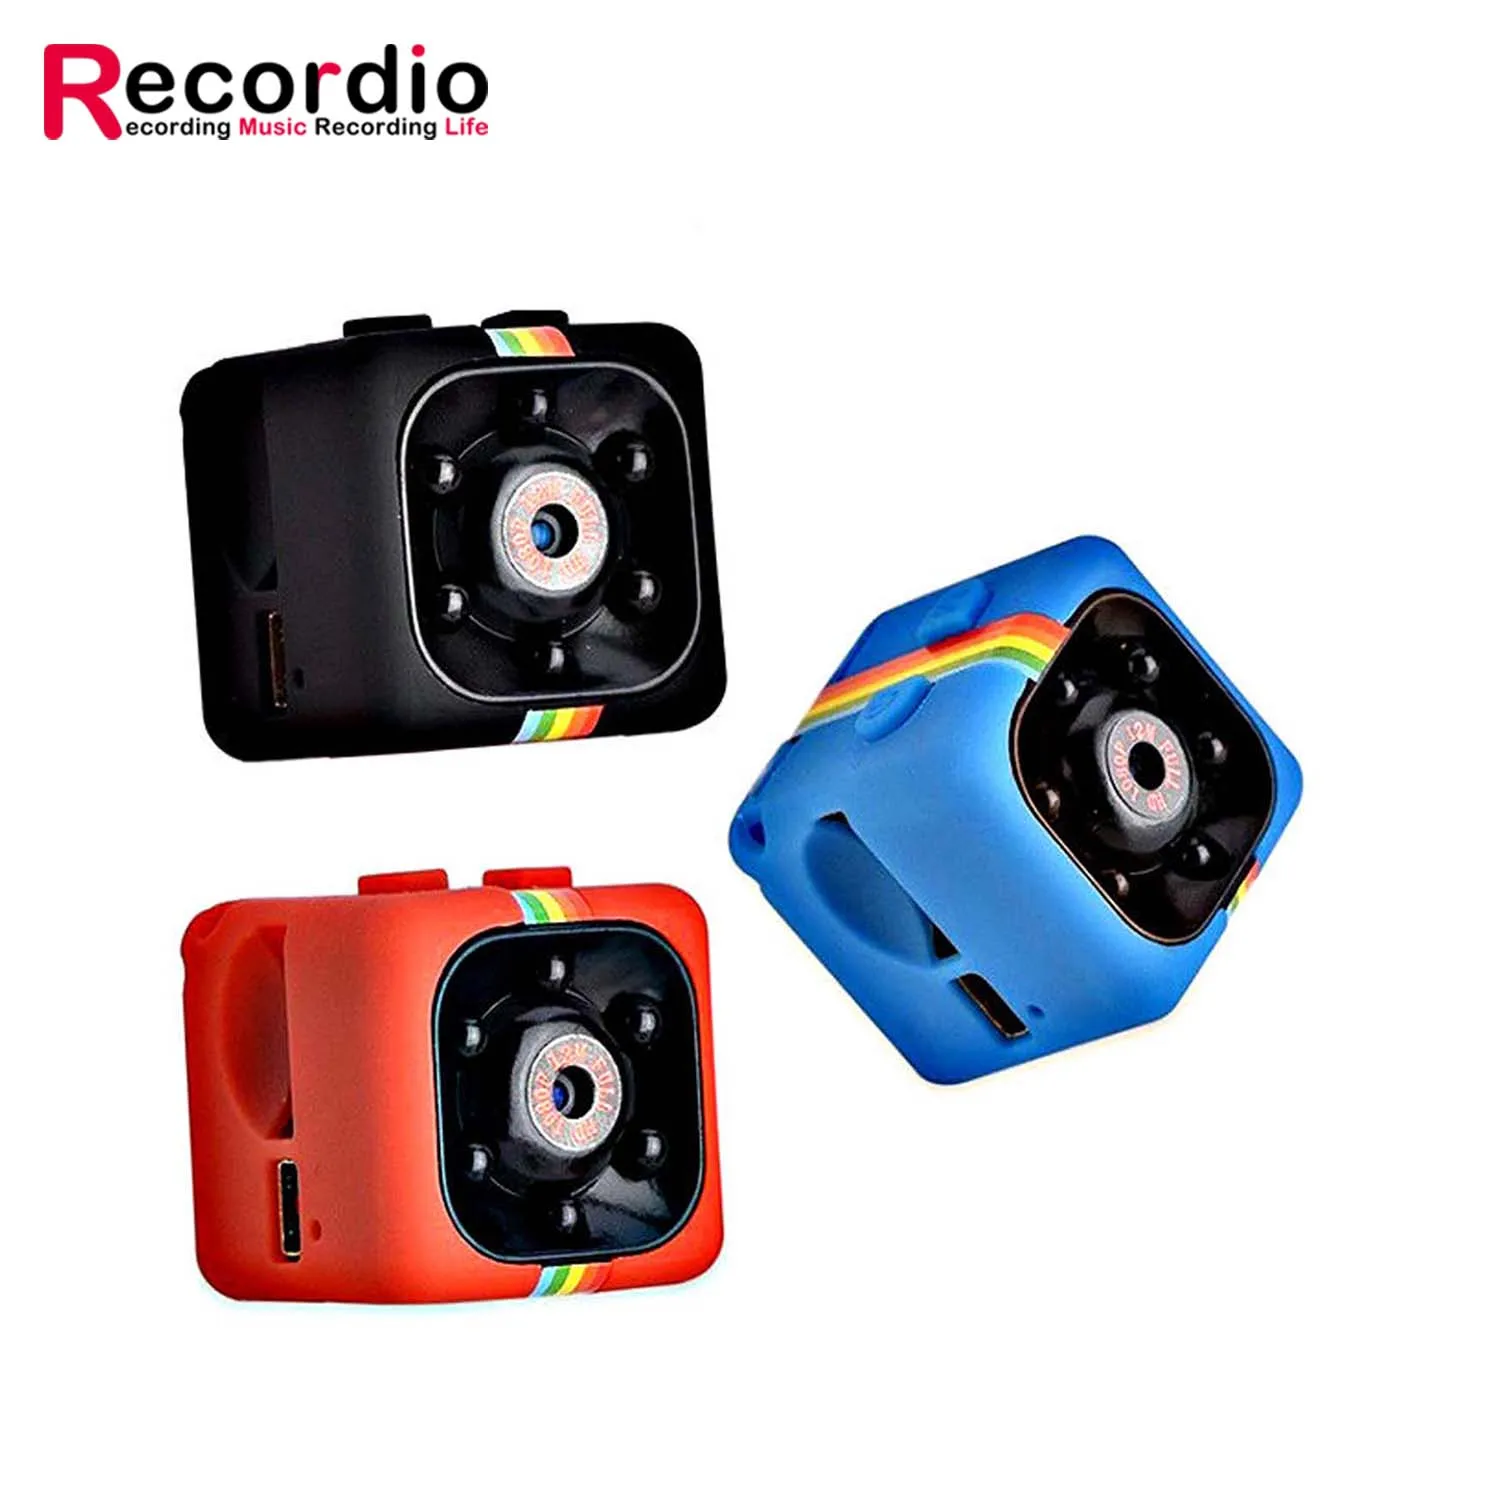 

GAZ-HD14 Amazon Hot HD Spy Camera Voice Video Recorder 960P 1080P Mini Hidden Recorder Camera